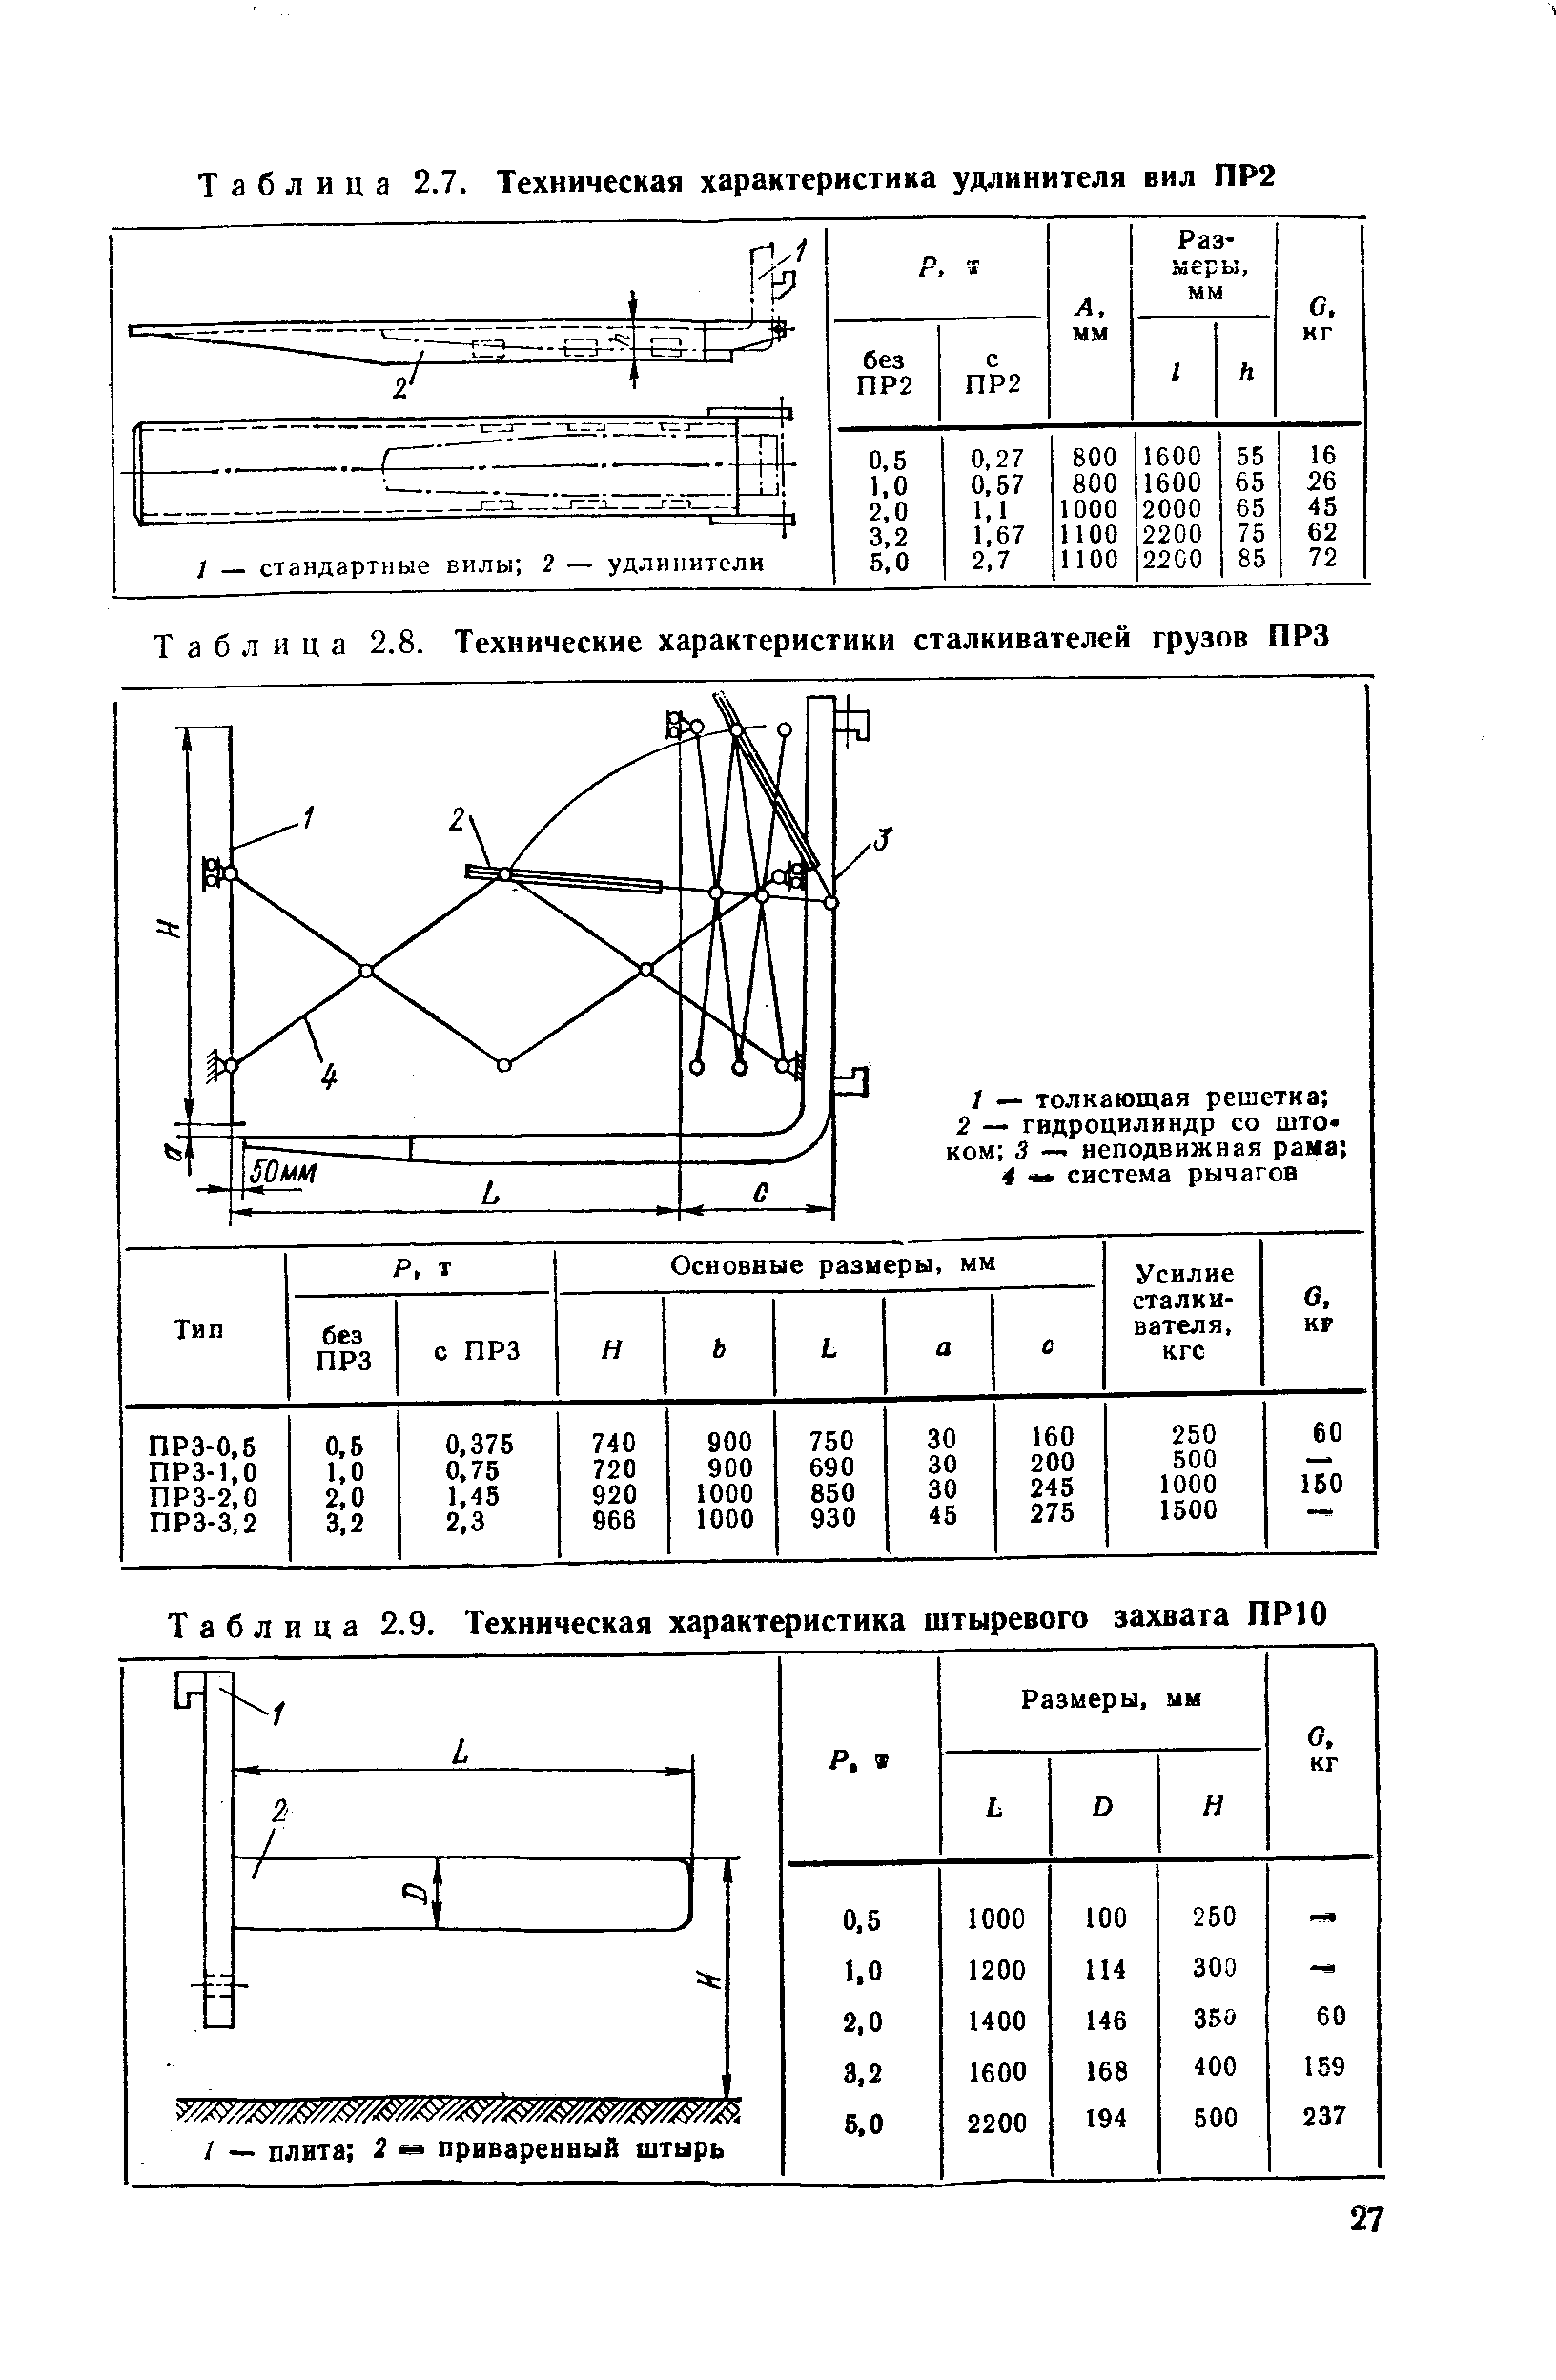 Таблица 2.9. Техническая характеристика штыревого захвата ПРЮ
